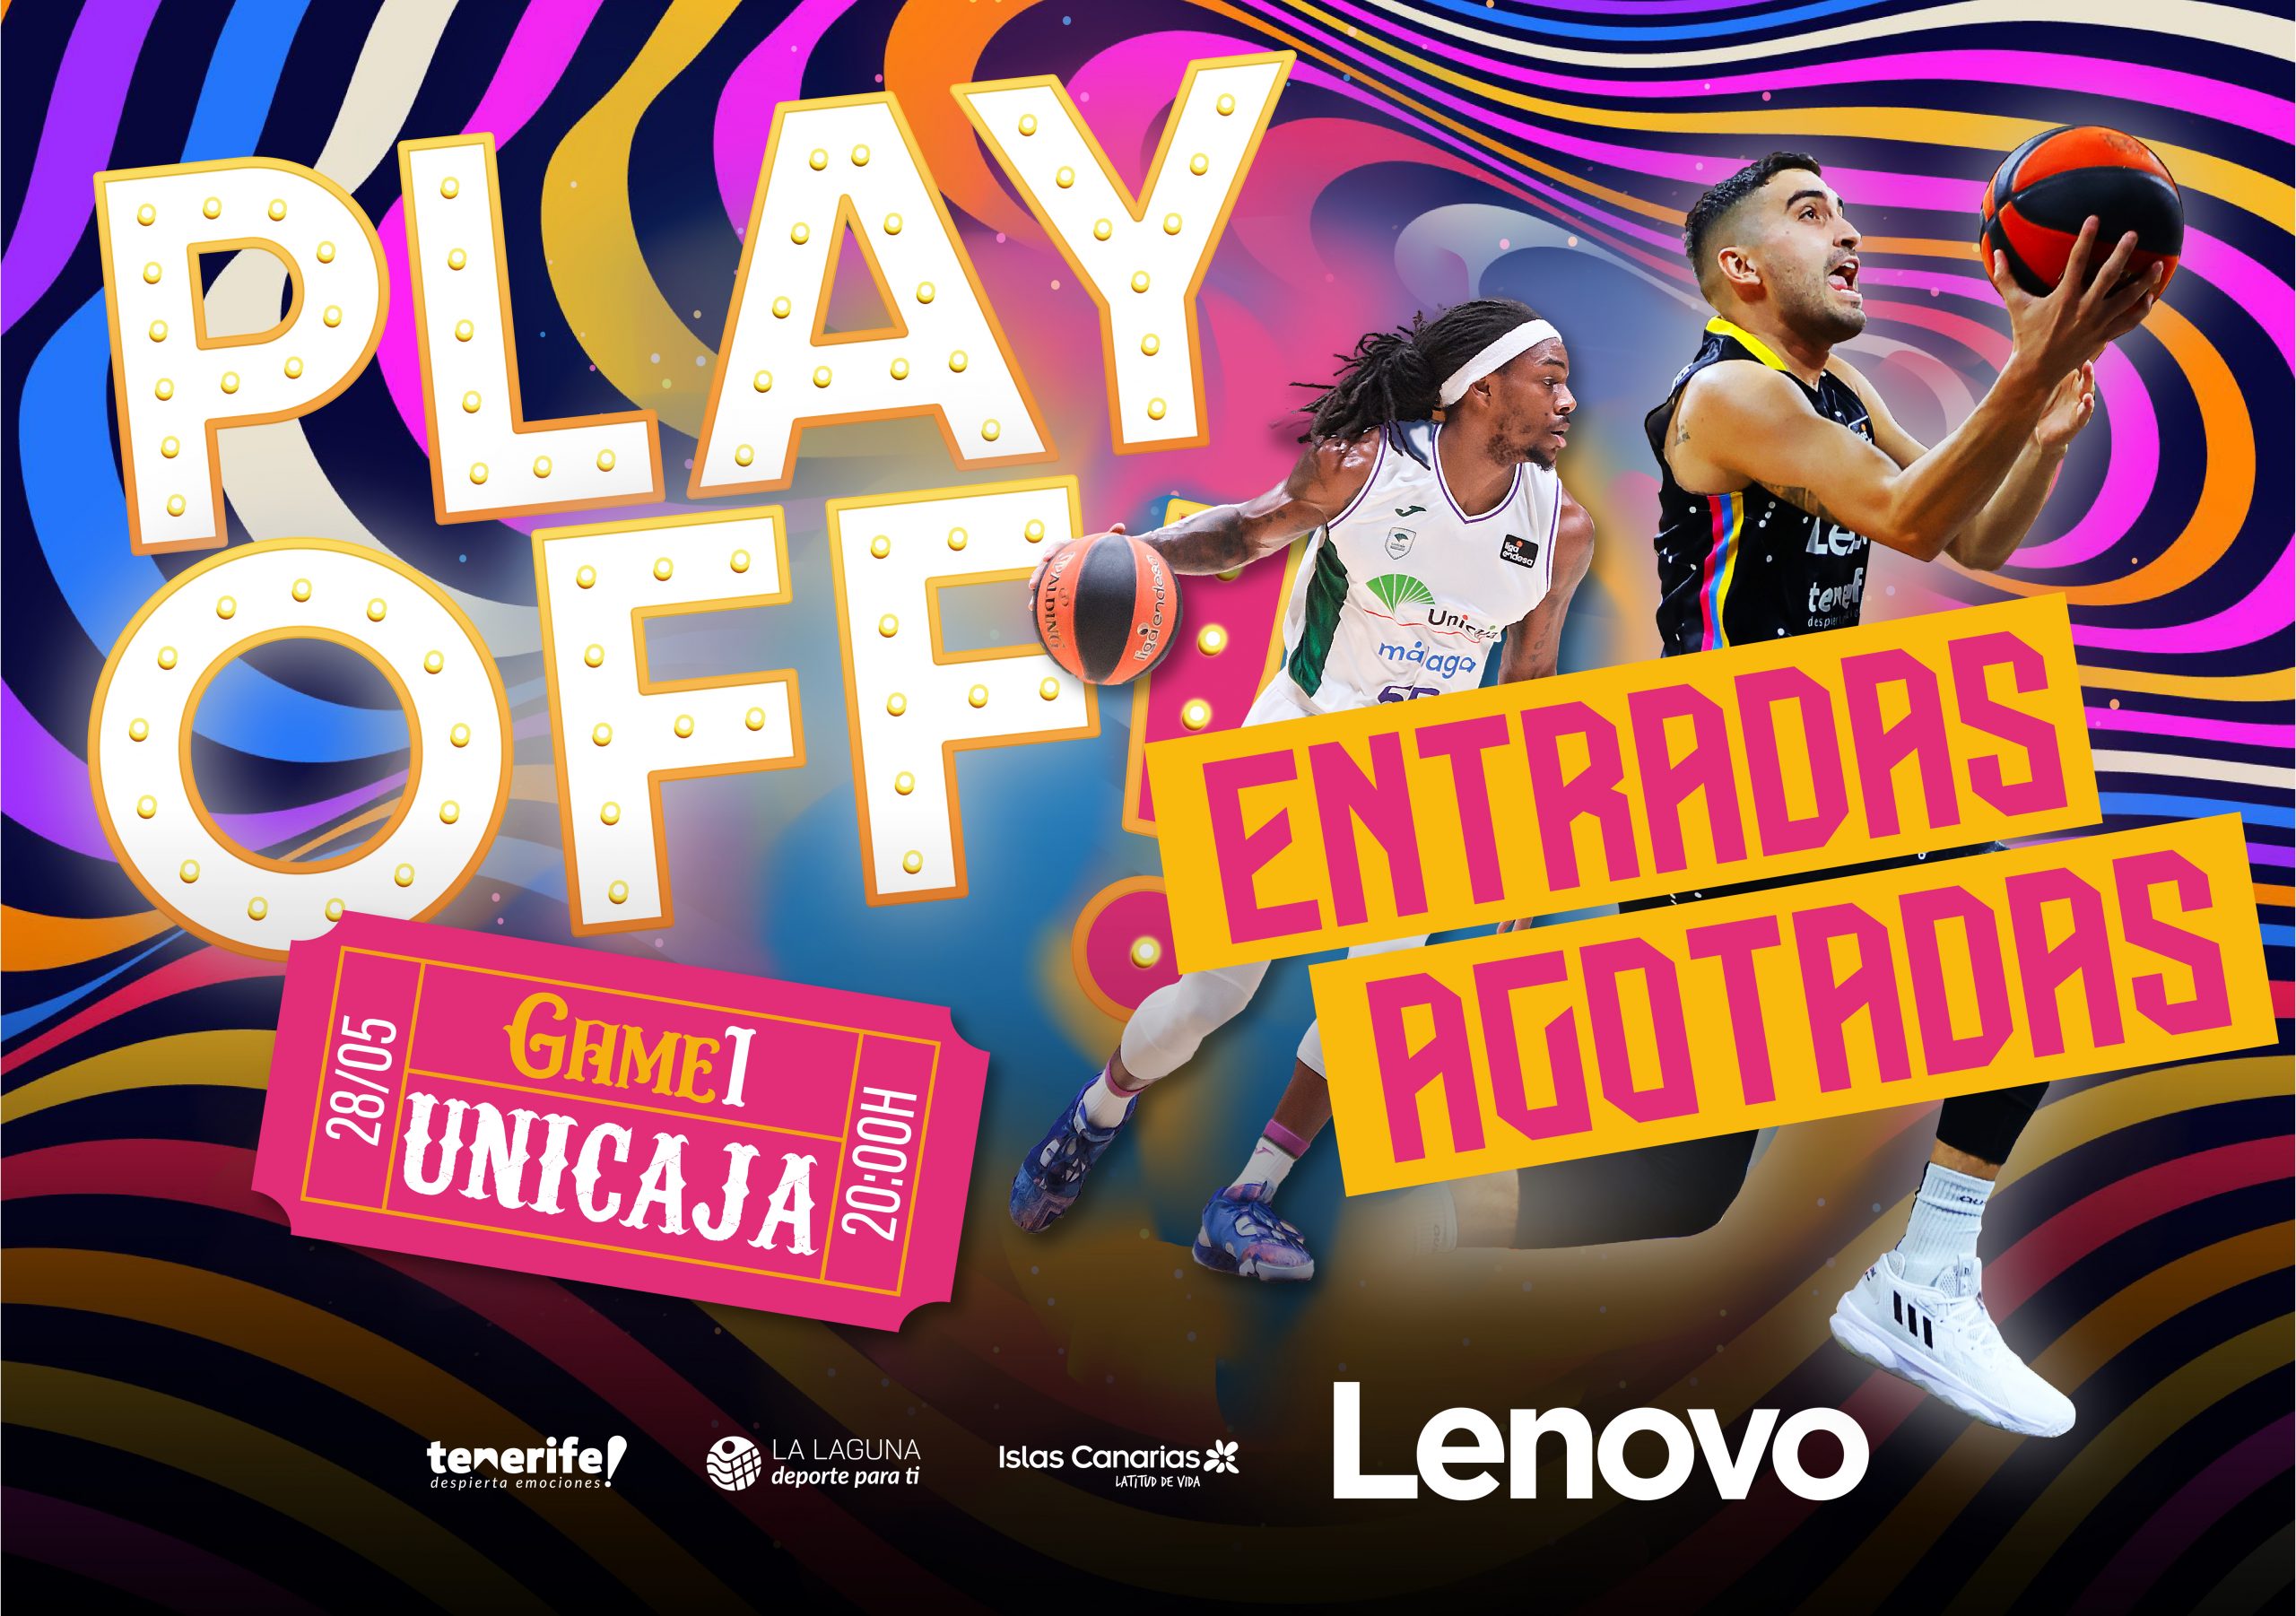 Agotadas las entradas para el Lenovo Tenerife-Unicaja del playoff de este domingo